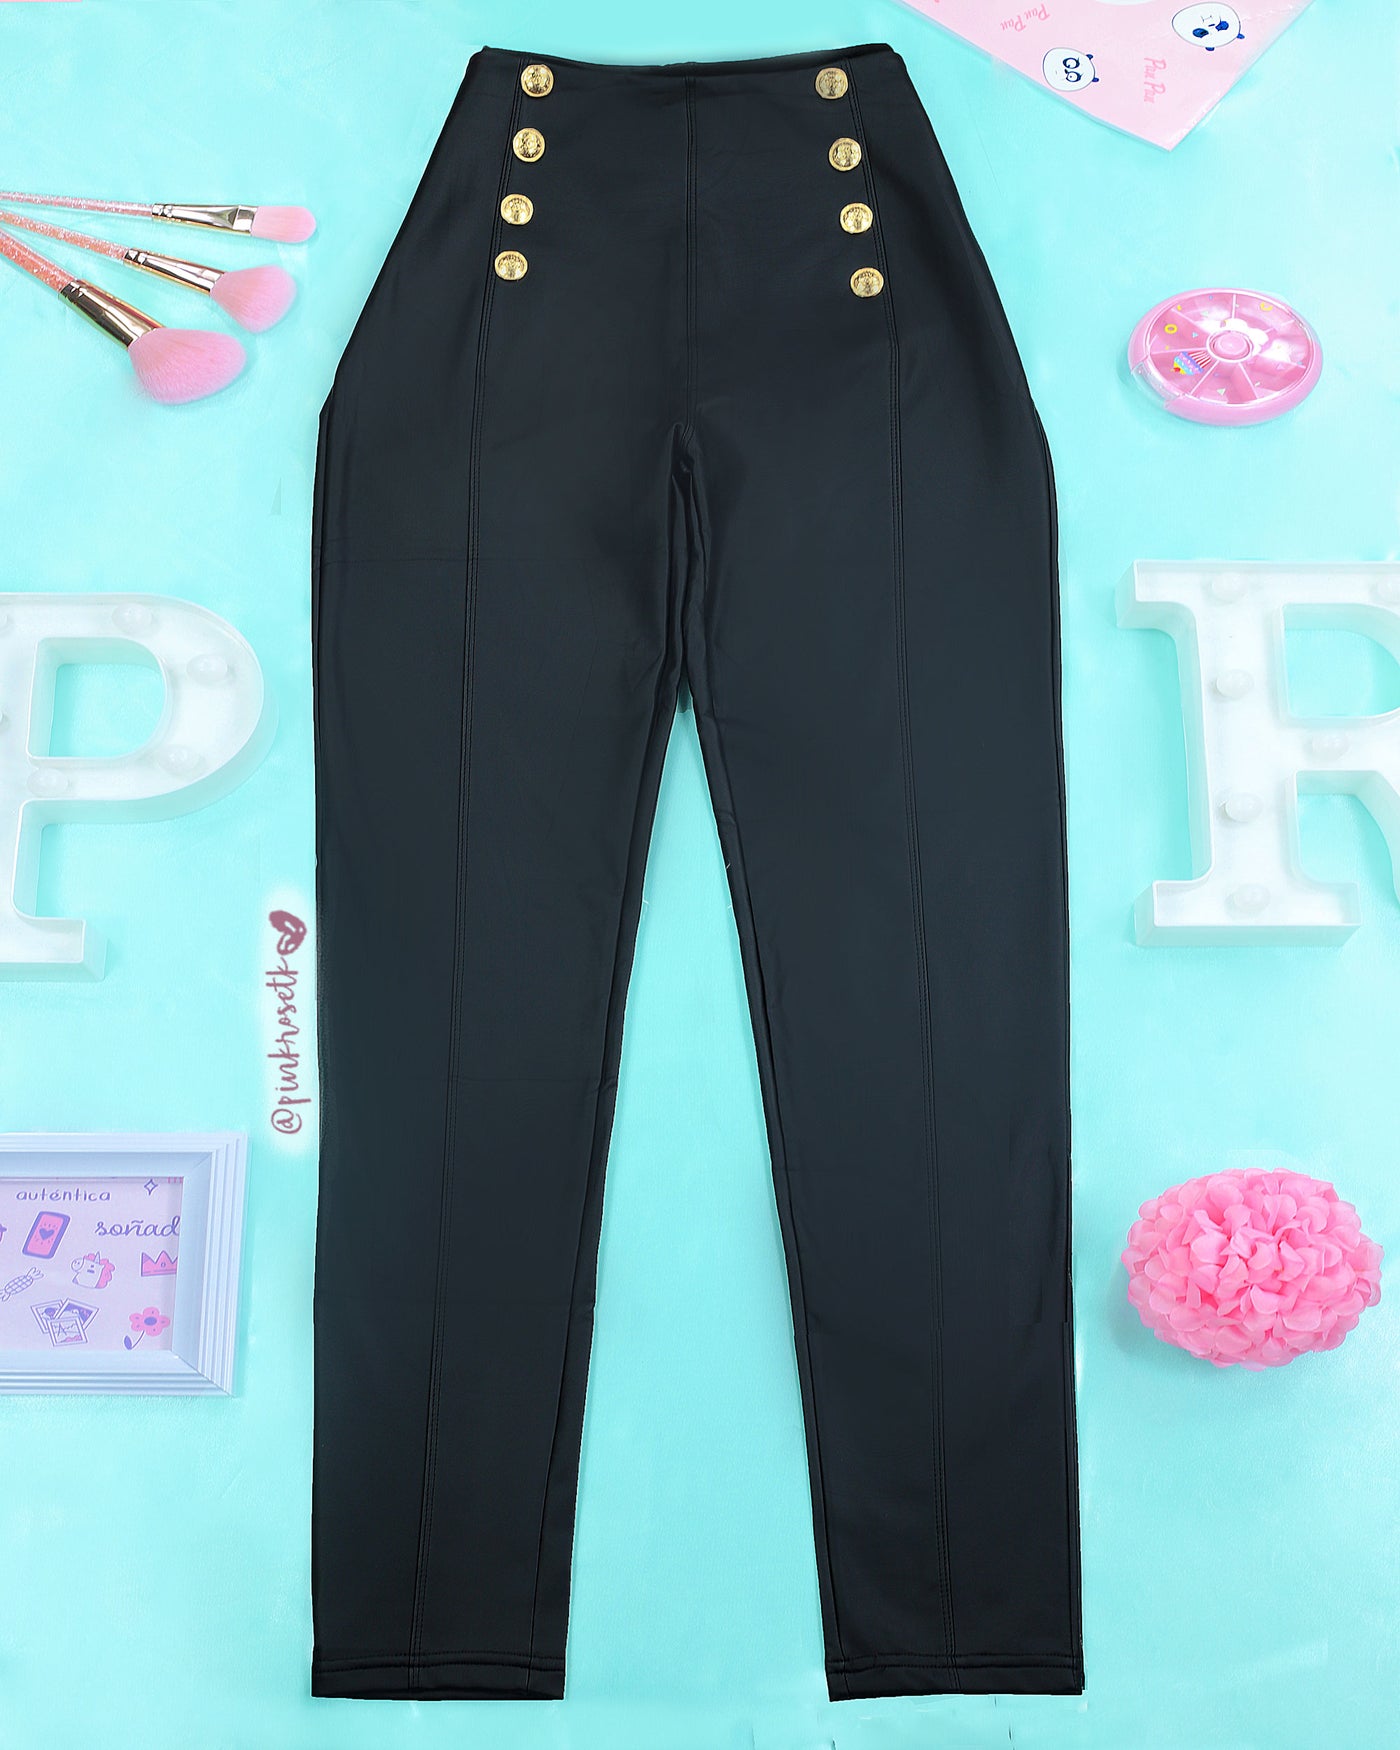 Berenjena Convencional Rechazar Pantalón negro cuerina tiro alto con seis botones – Pink Rose tk